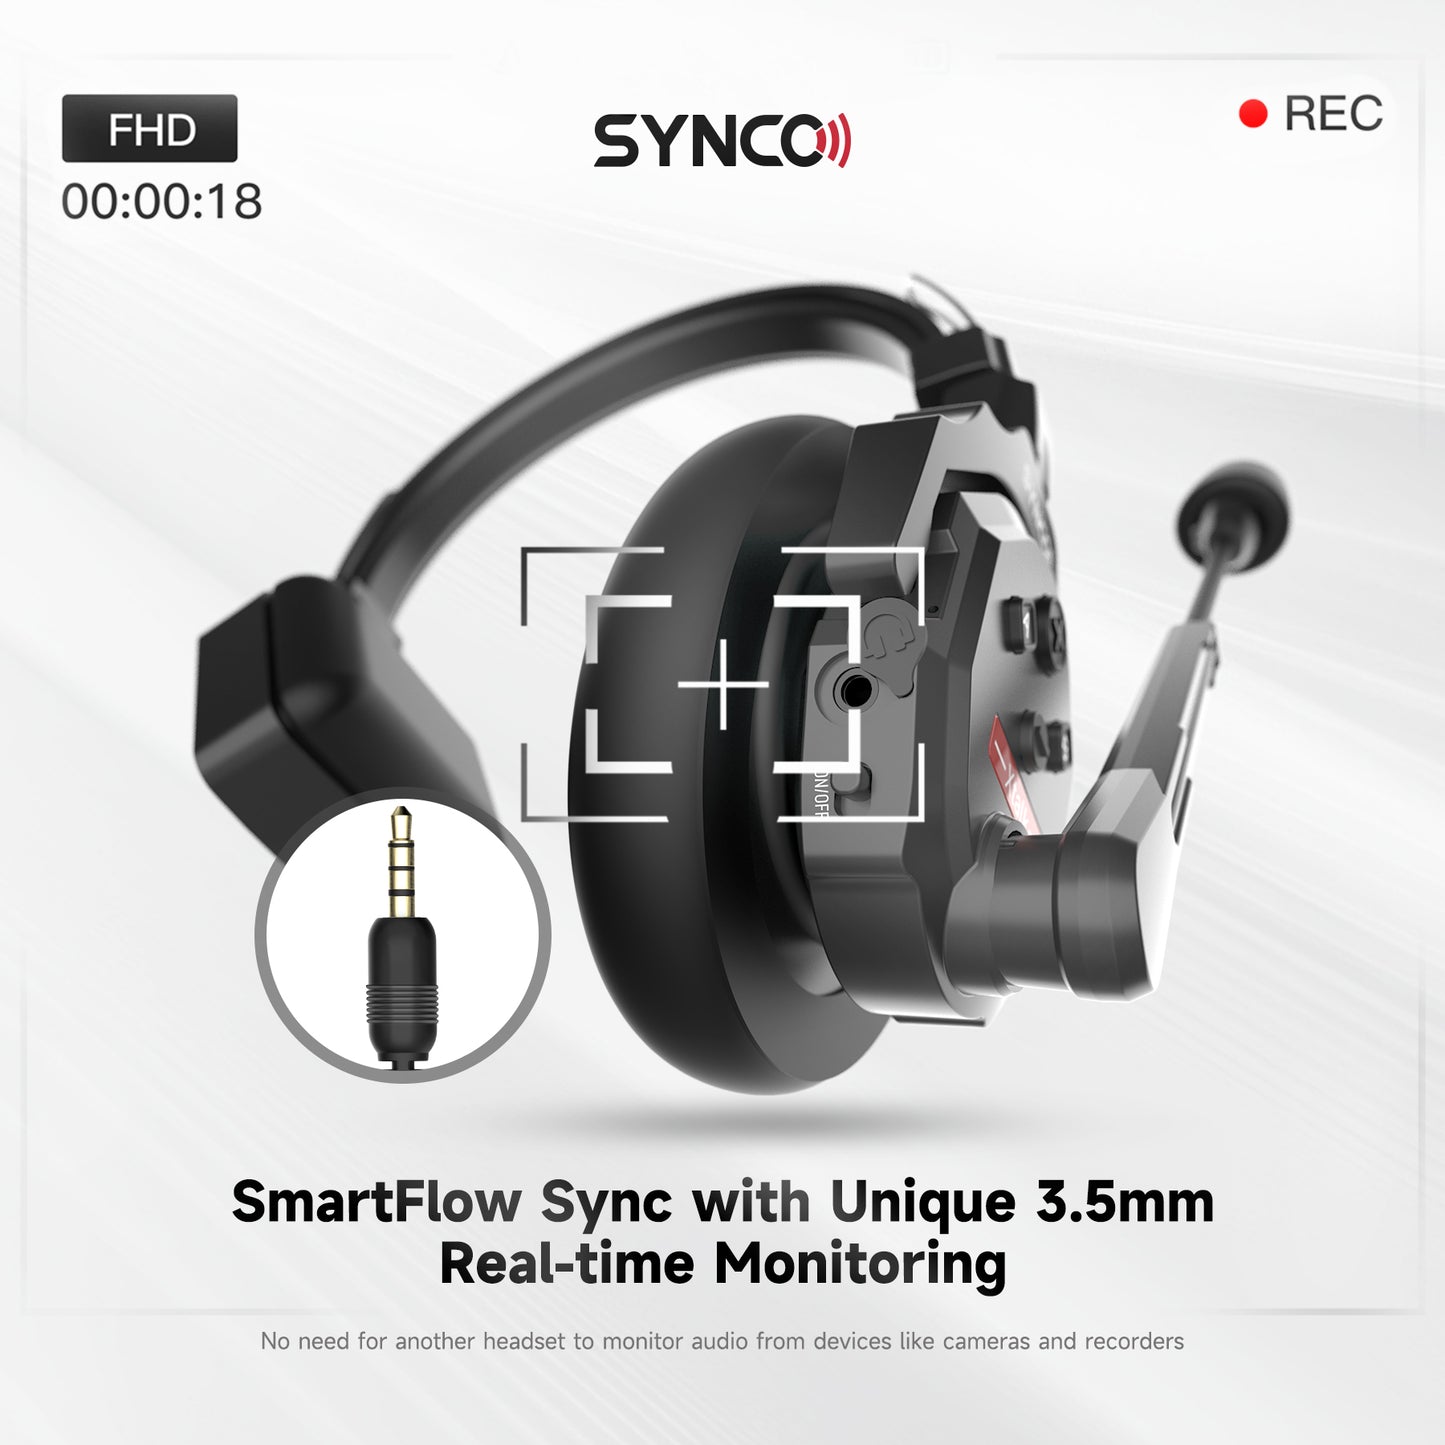 SYNCO XTalk 2.4GHz 映画制作用ワイヤレスインターコムヘッドセットシステム